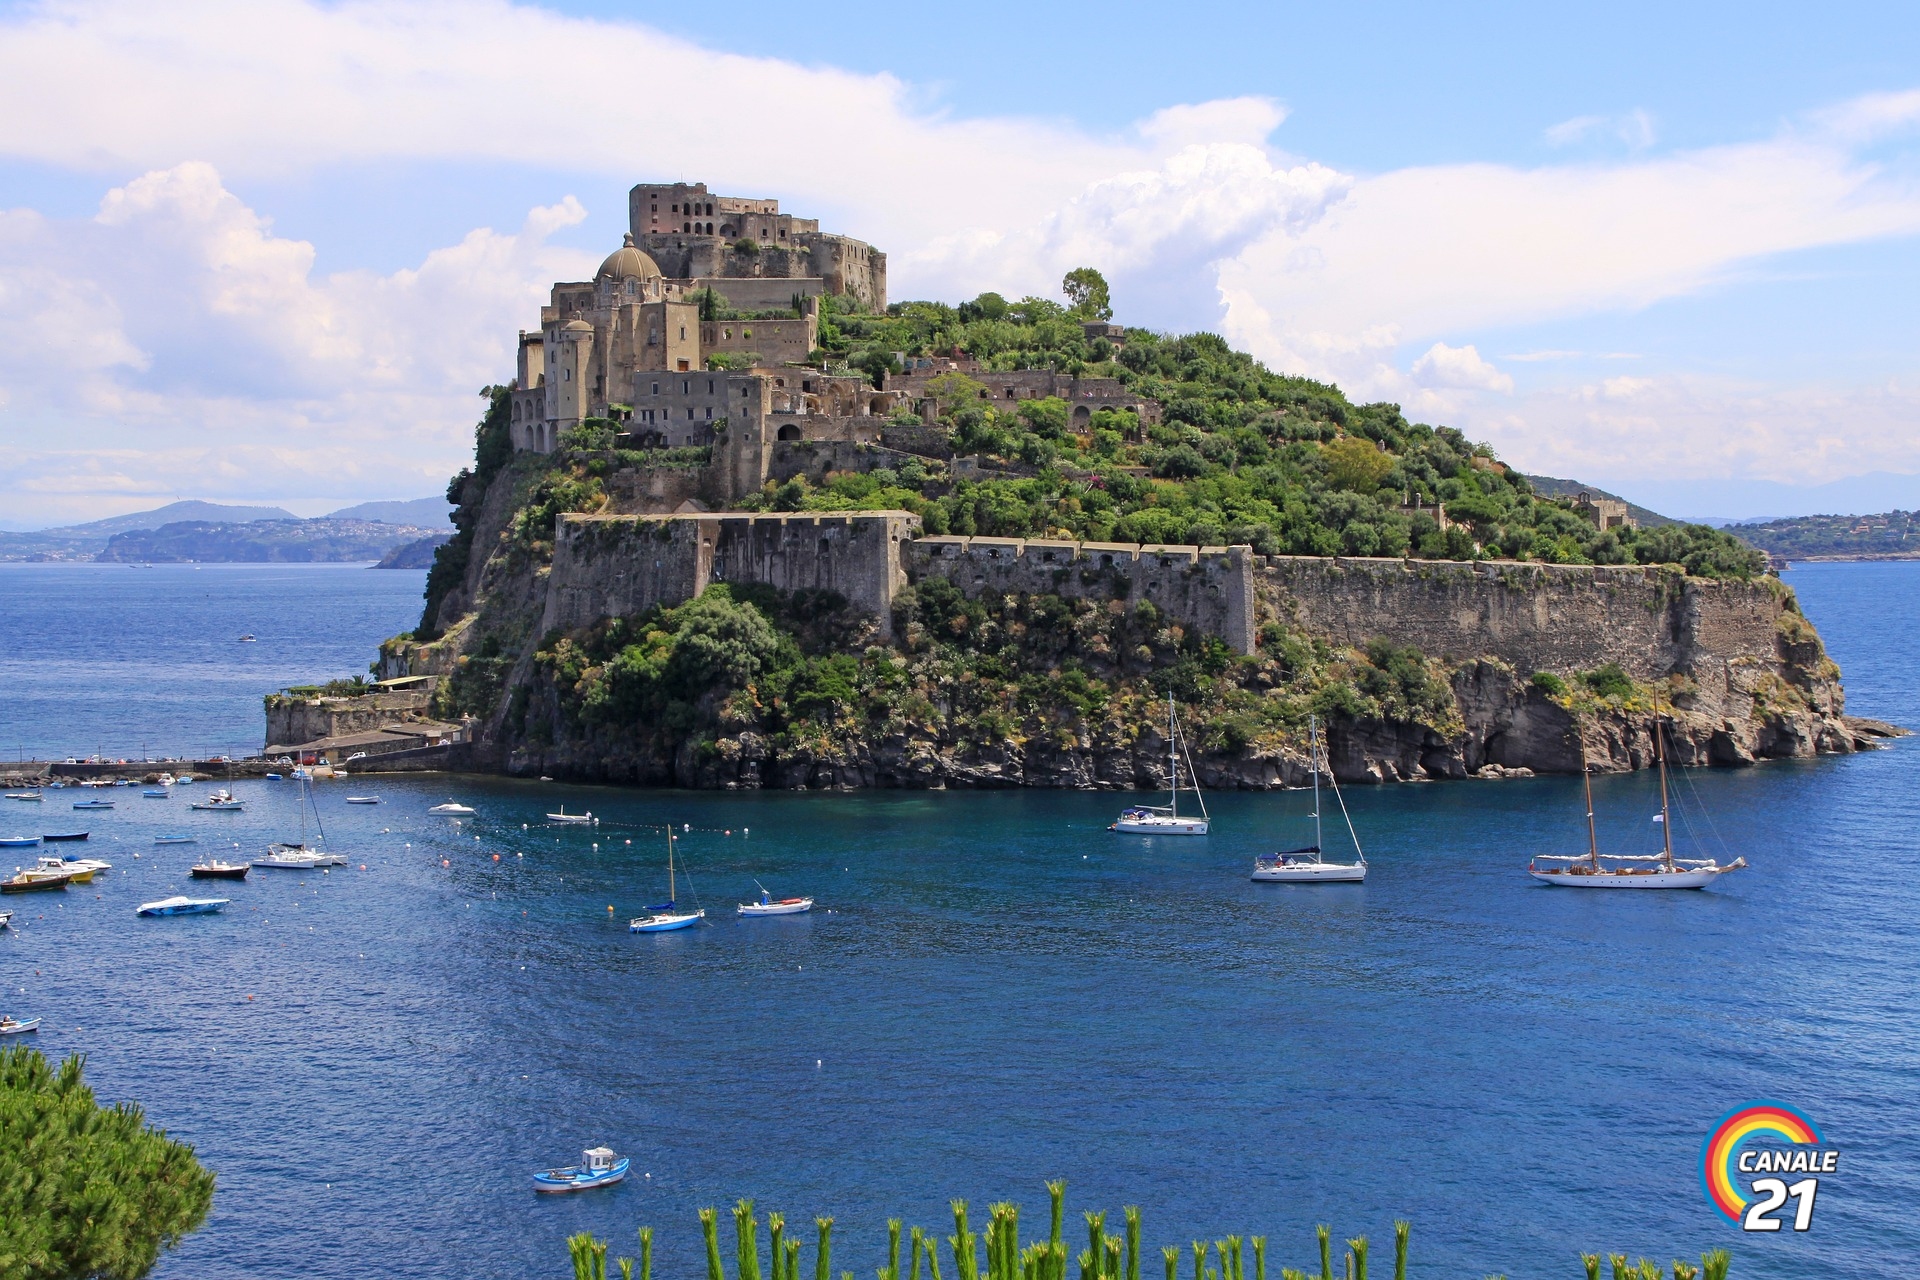 ischia castello aragonese